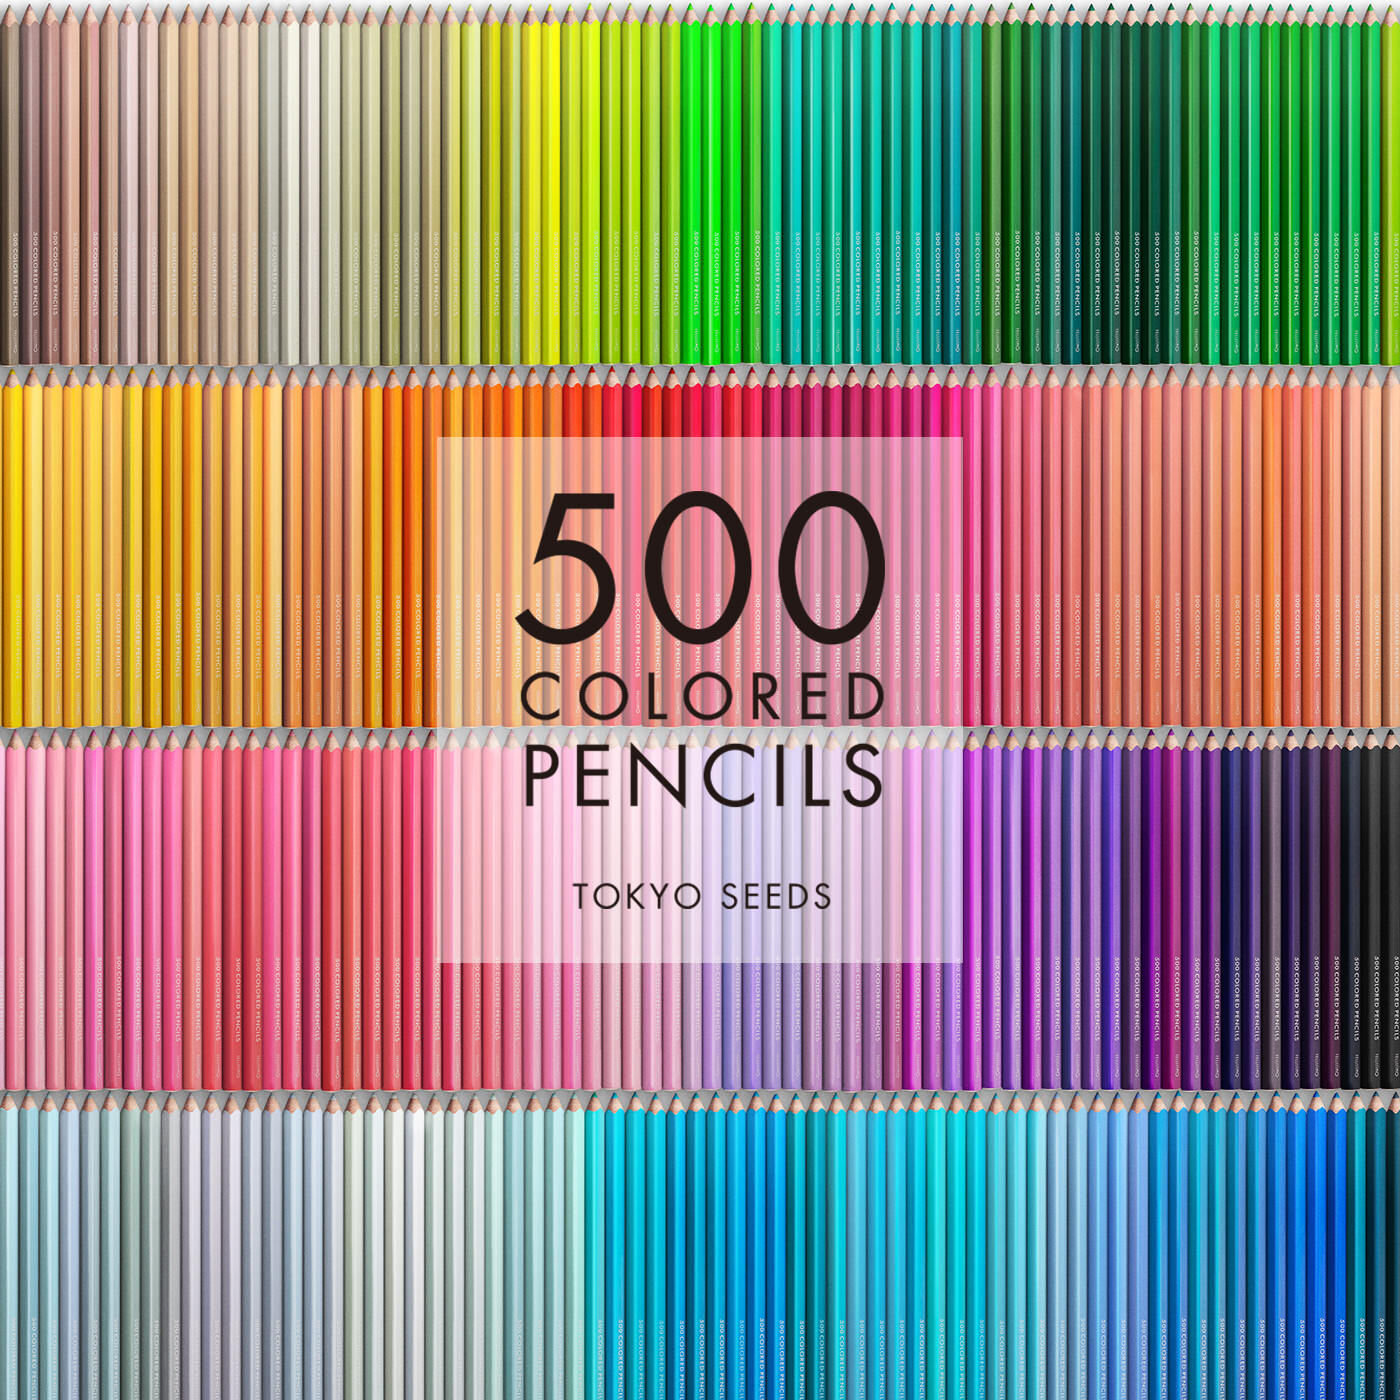 Real Stock|【259/500 RAIN DROP】500色の色えんぴつ TOKYO SEEDS|1992年、世界初の「500色」という膨大な色数の色えんぴつが誕生して以来、その販売数は発売当初から合わせると、世界55ヵ国10万セット以上。今回、メイド・イン・ジャパンにこだわり、すべてが新しく生まれ変わって登場しました。